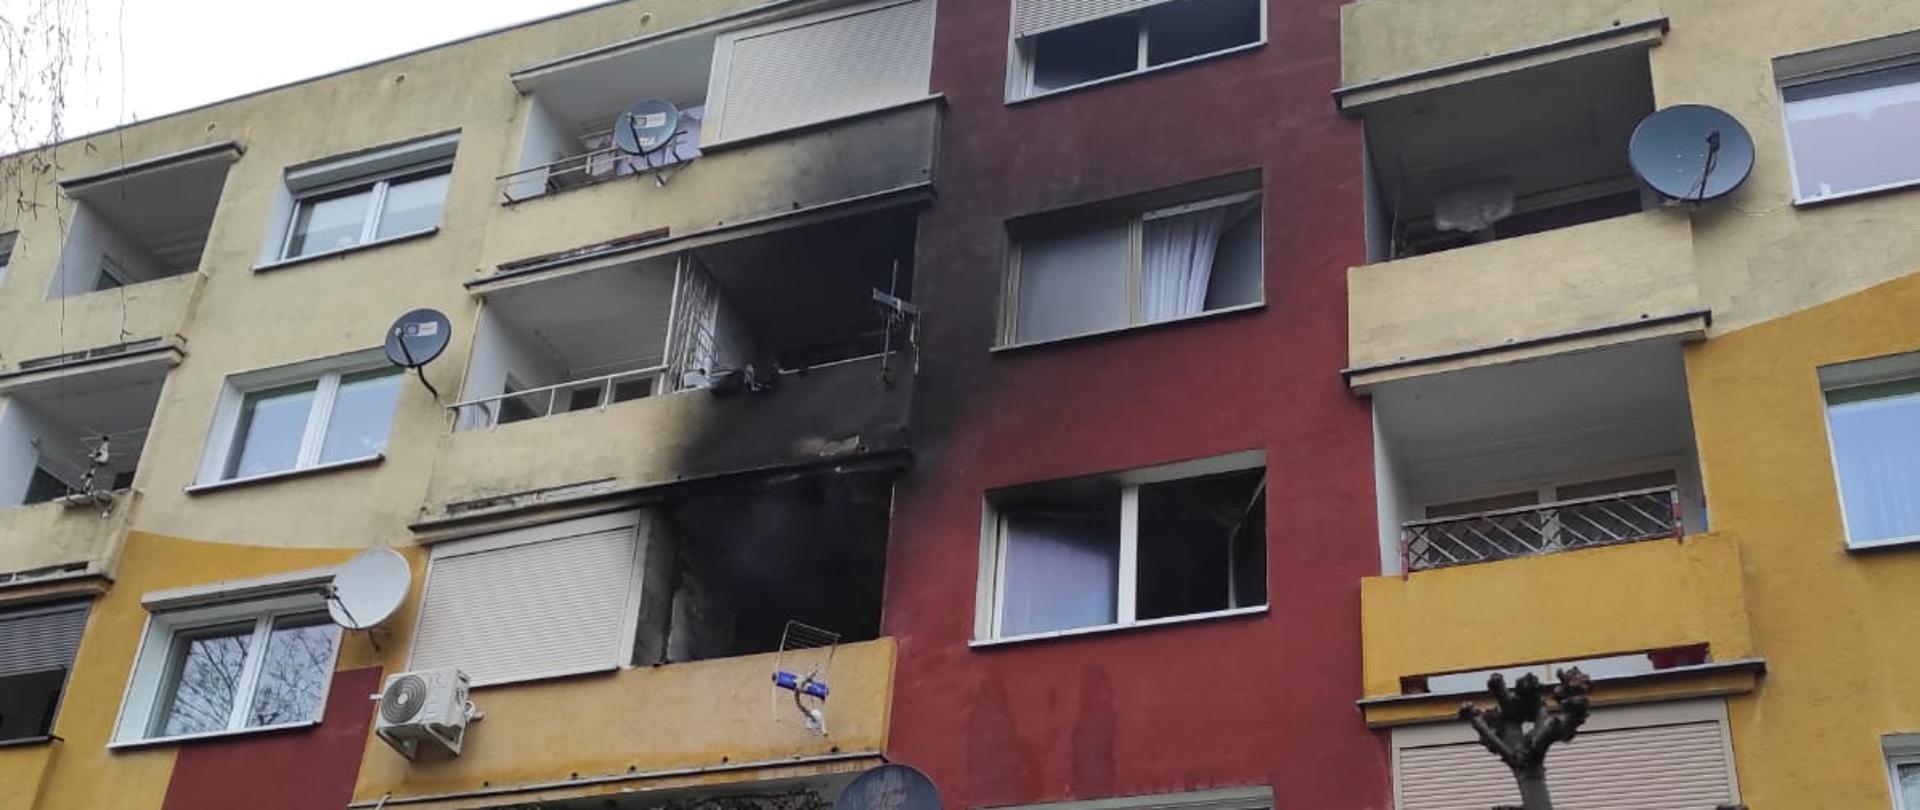 Na zdjęciu widzimy blok mieszkalny z kolorową elewacją. Jedno z mieszkań okopcone po pożarze.